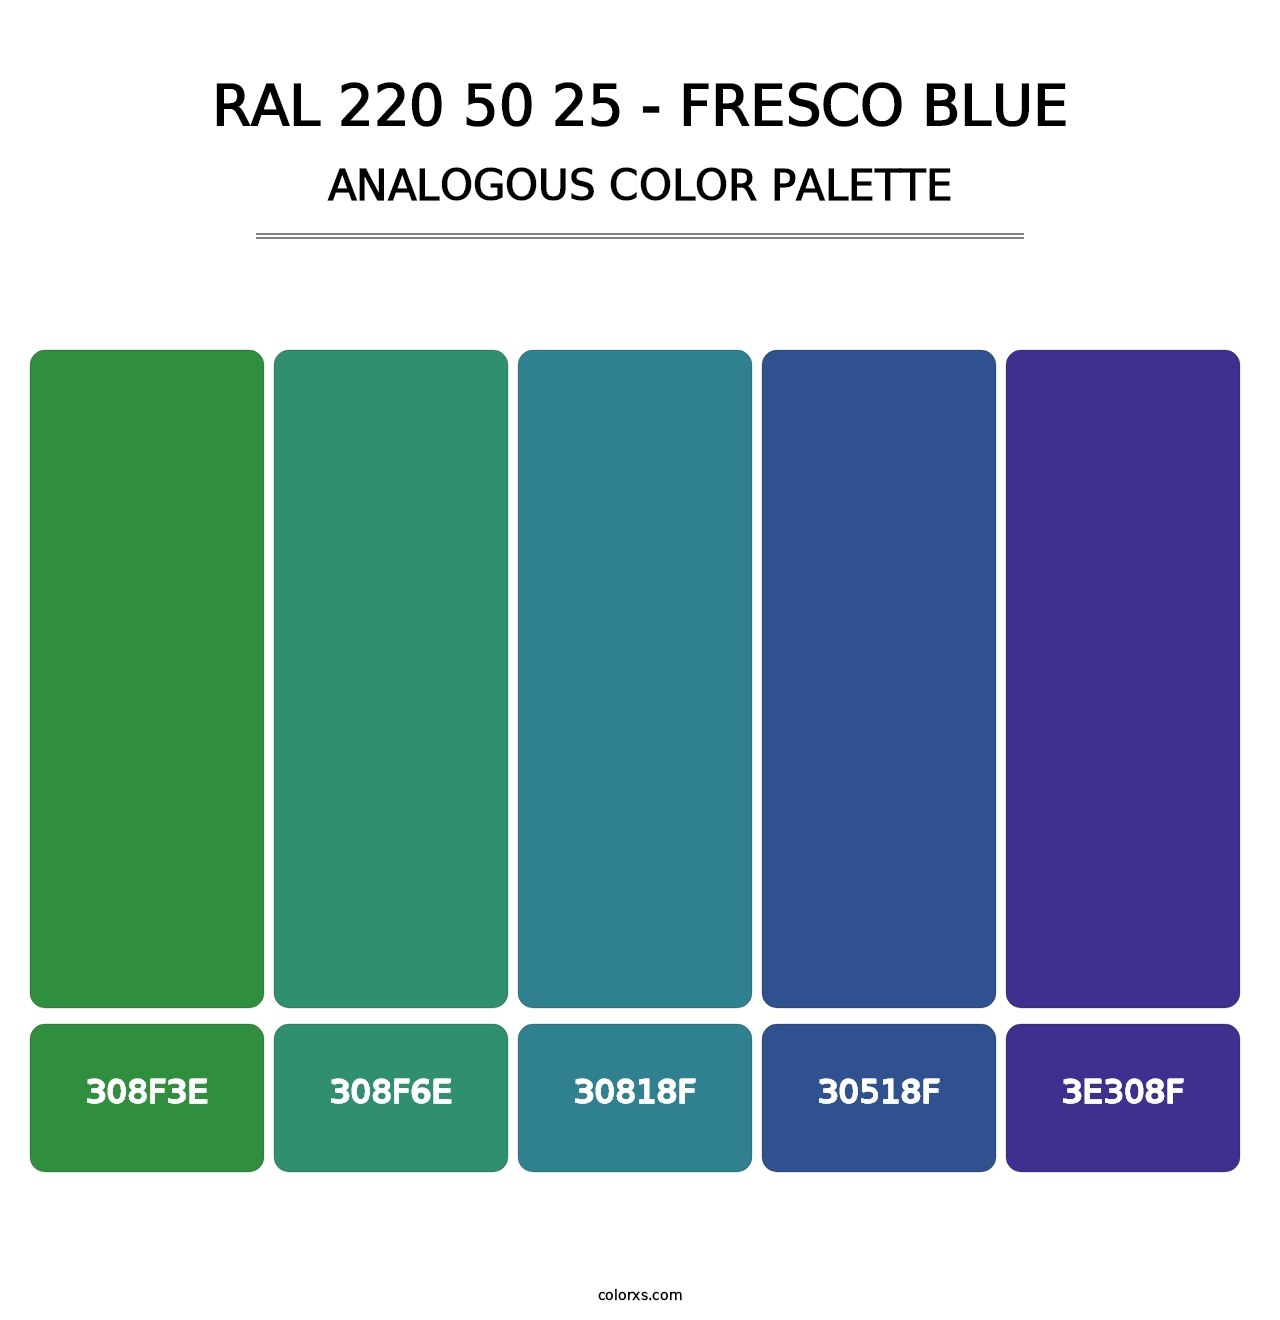 RAL 220 50 25 - Fresco Blue - Analogous Color Palette